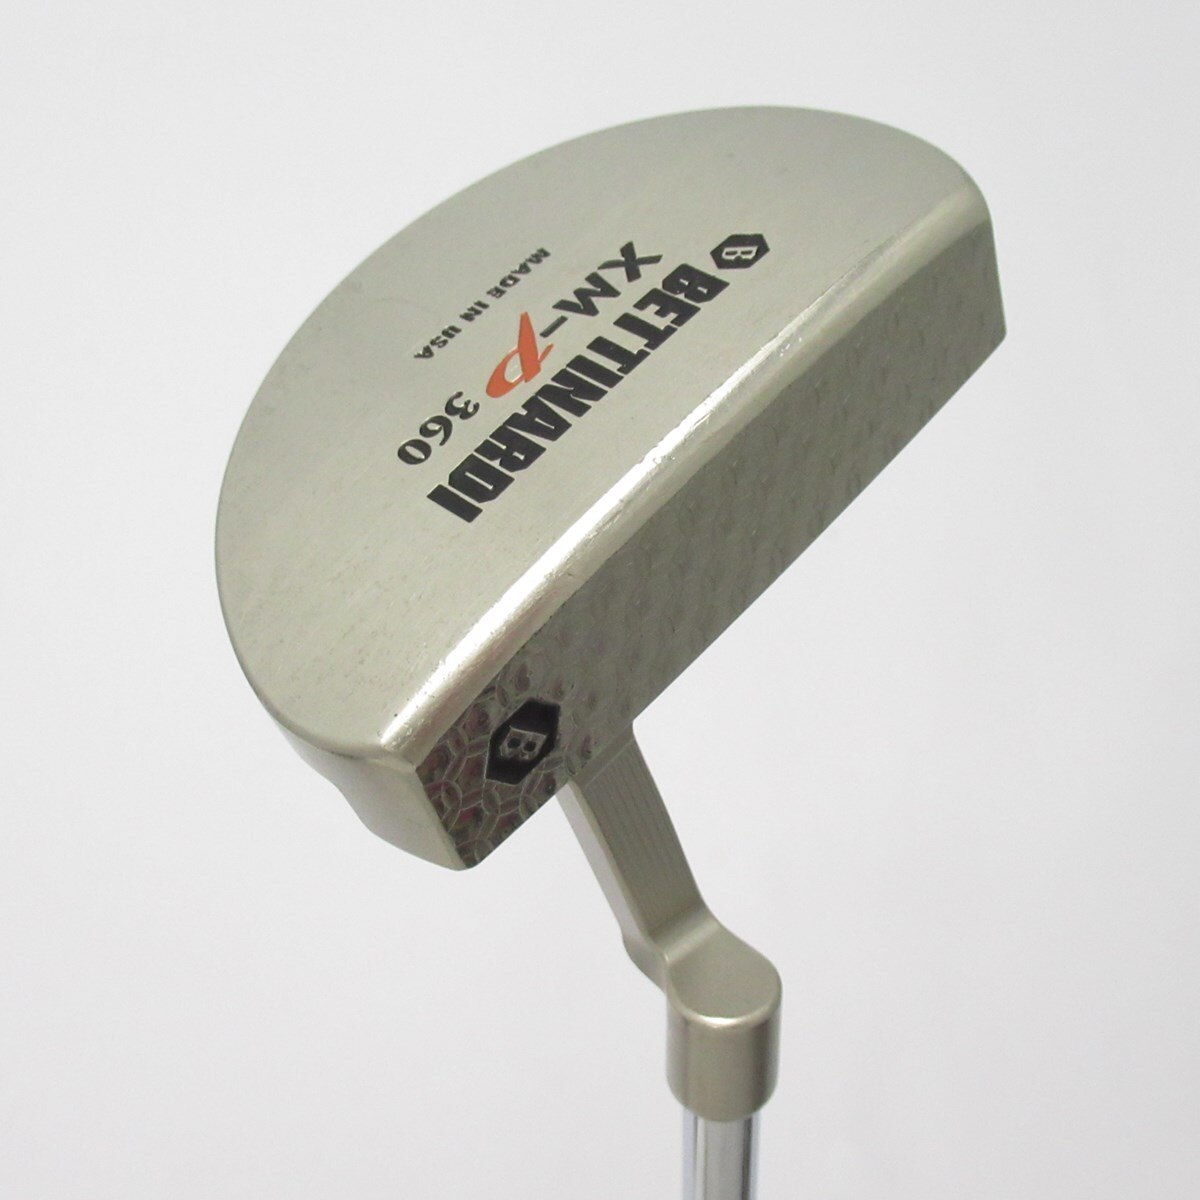 ベティナルディ360Mパター - ゴルフ